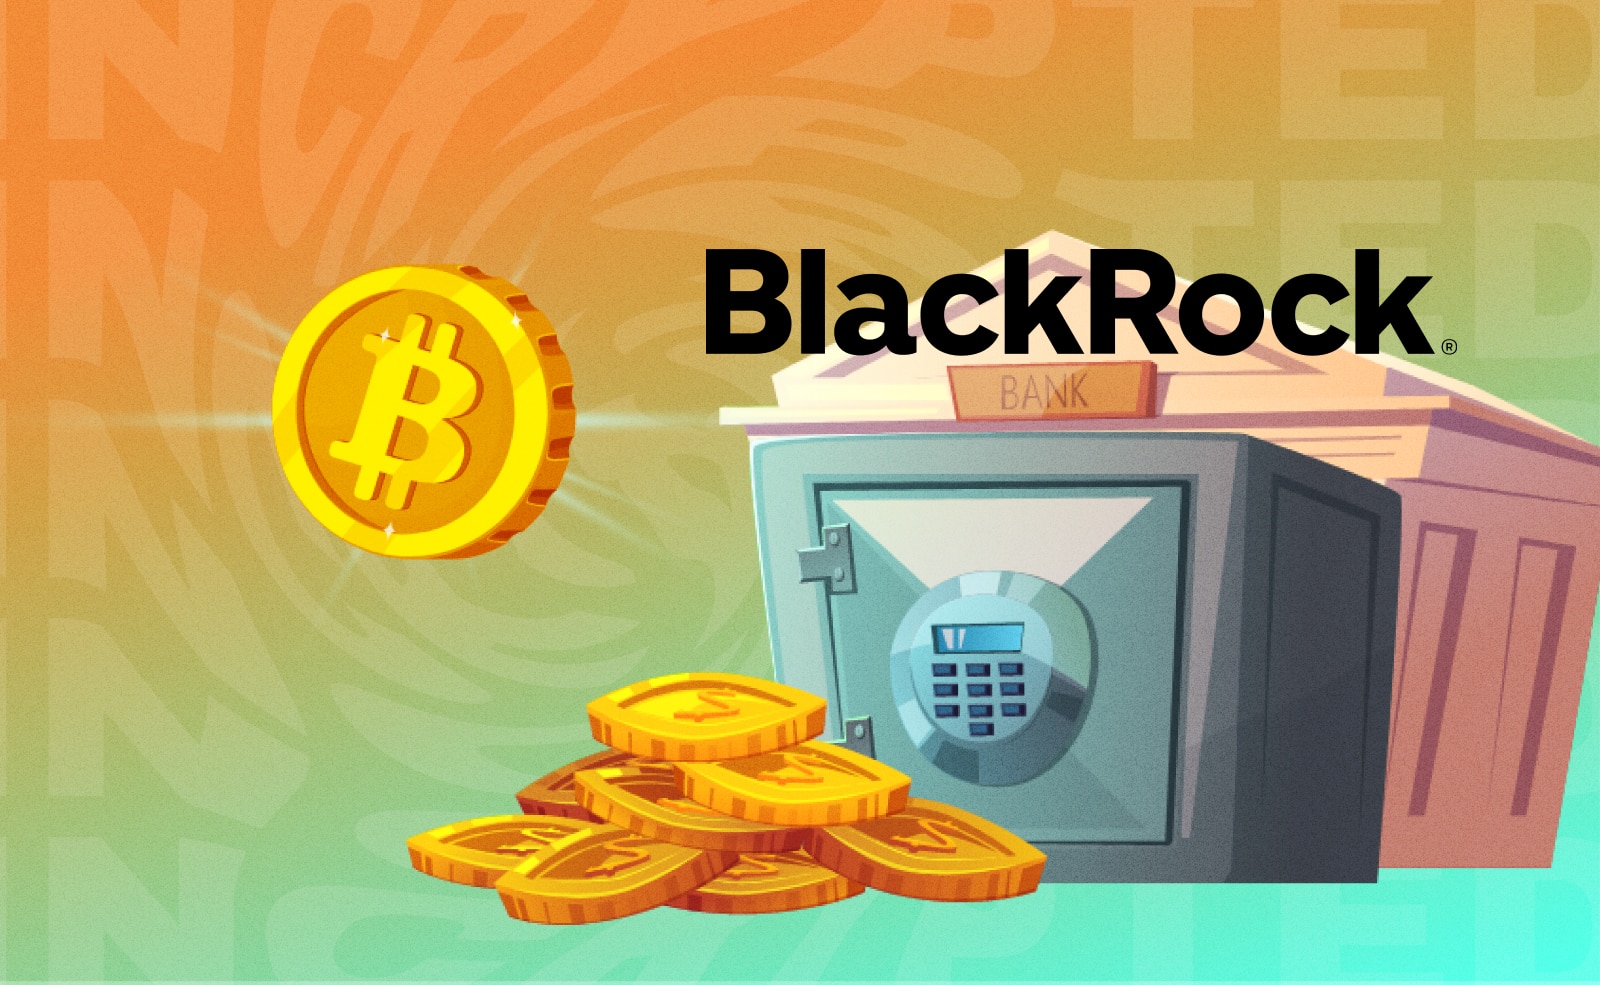 Инвест-гигант Blackrock добавил биткоин в список активов для своего распределительного фонда (Global Allocation Fund).